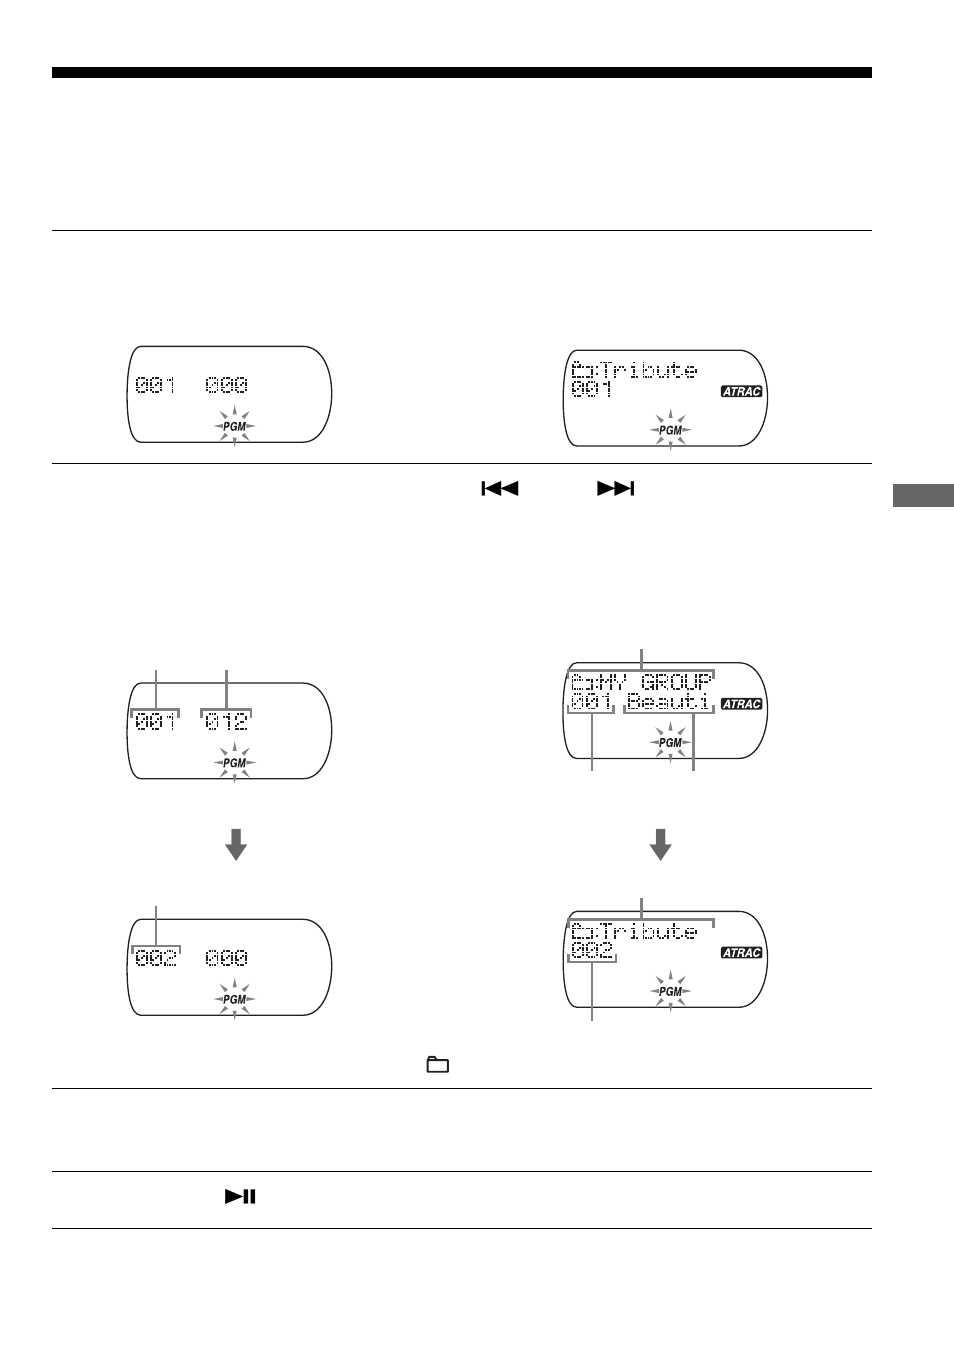 Reproduzir as faixas pela ordem desejada, Reprodução pgm) | Sony D-NE715 User Manual | Page 89 / 104